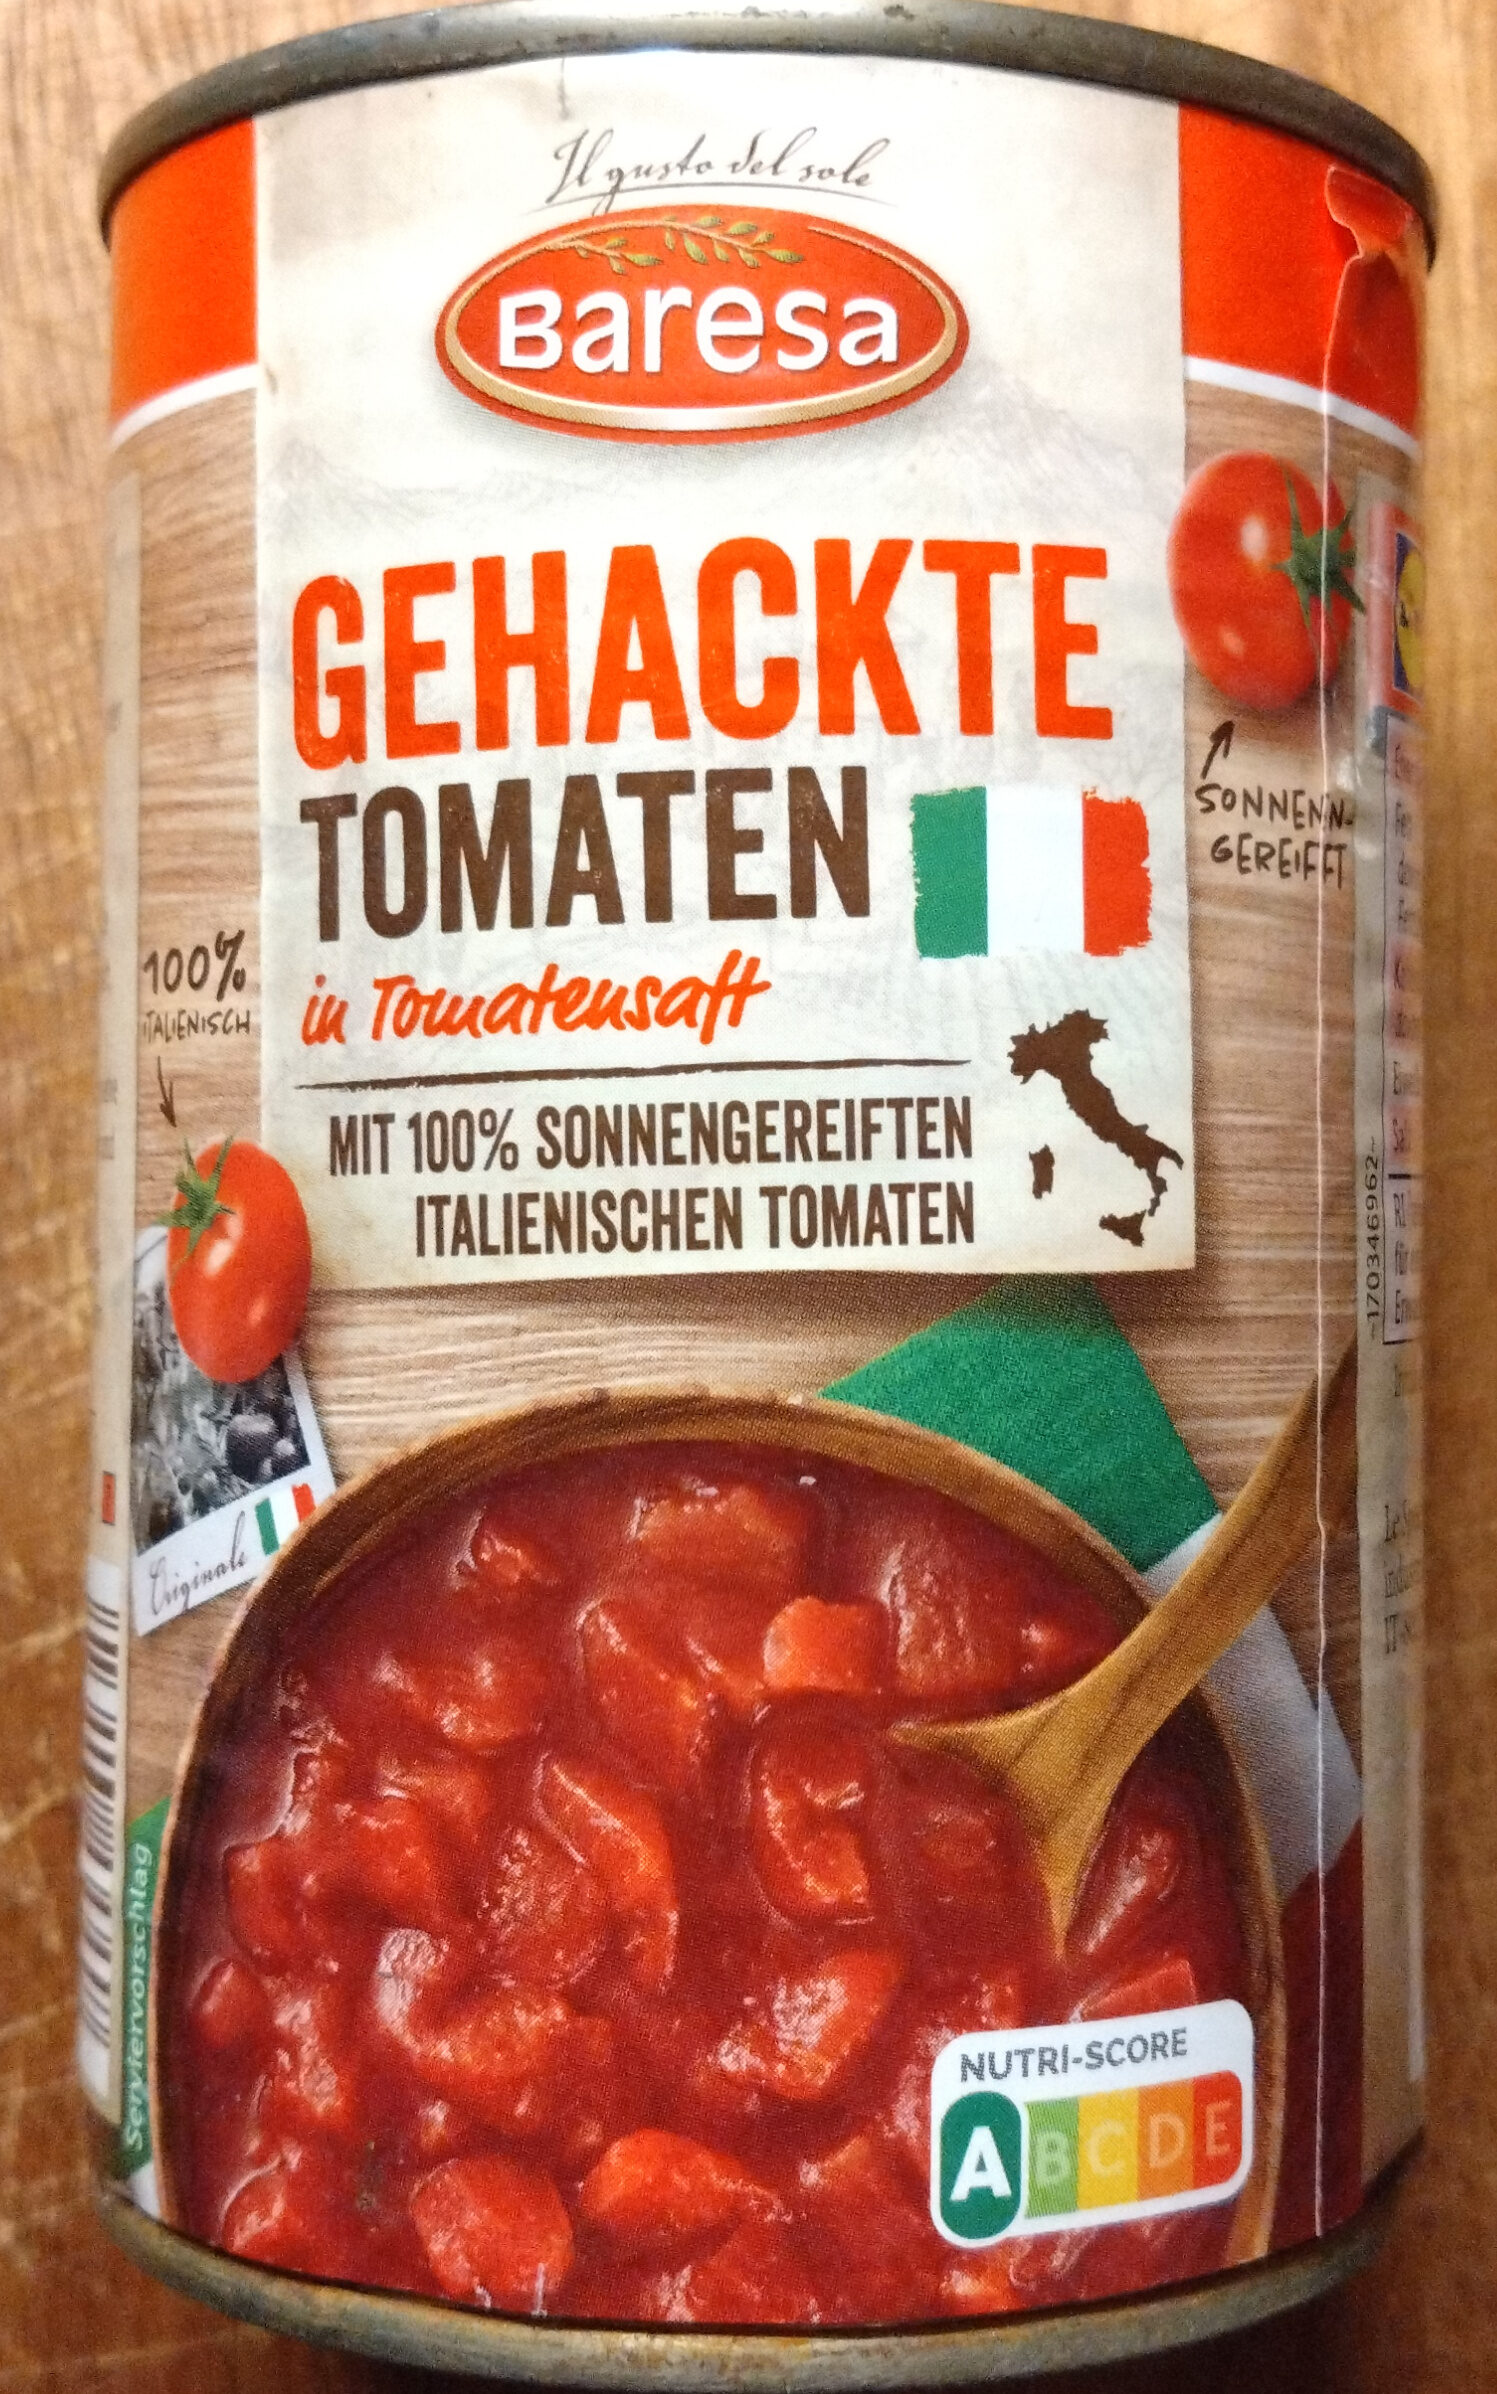 Tomaten gehackt - Product - de